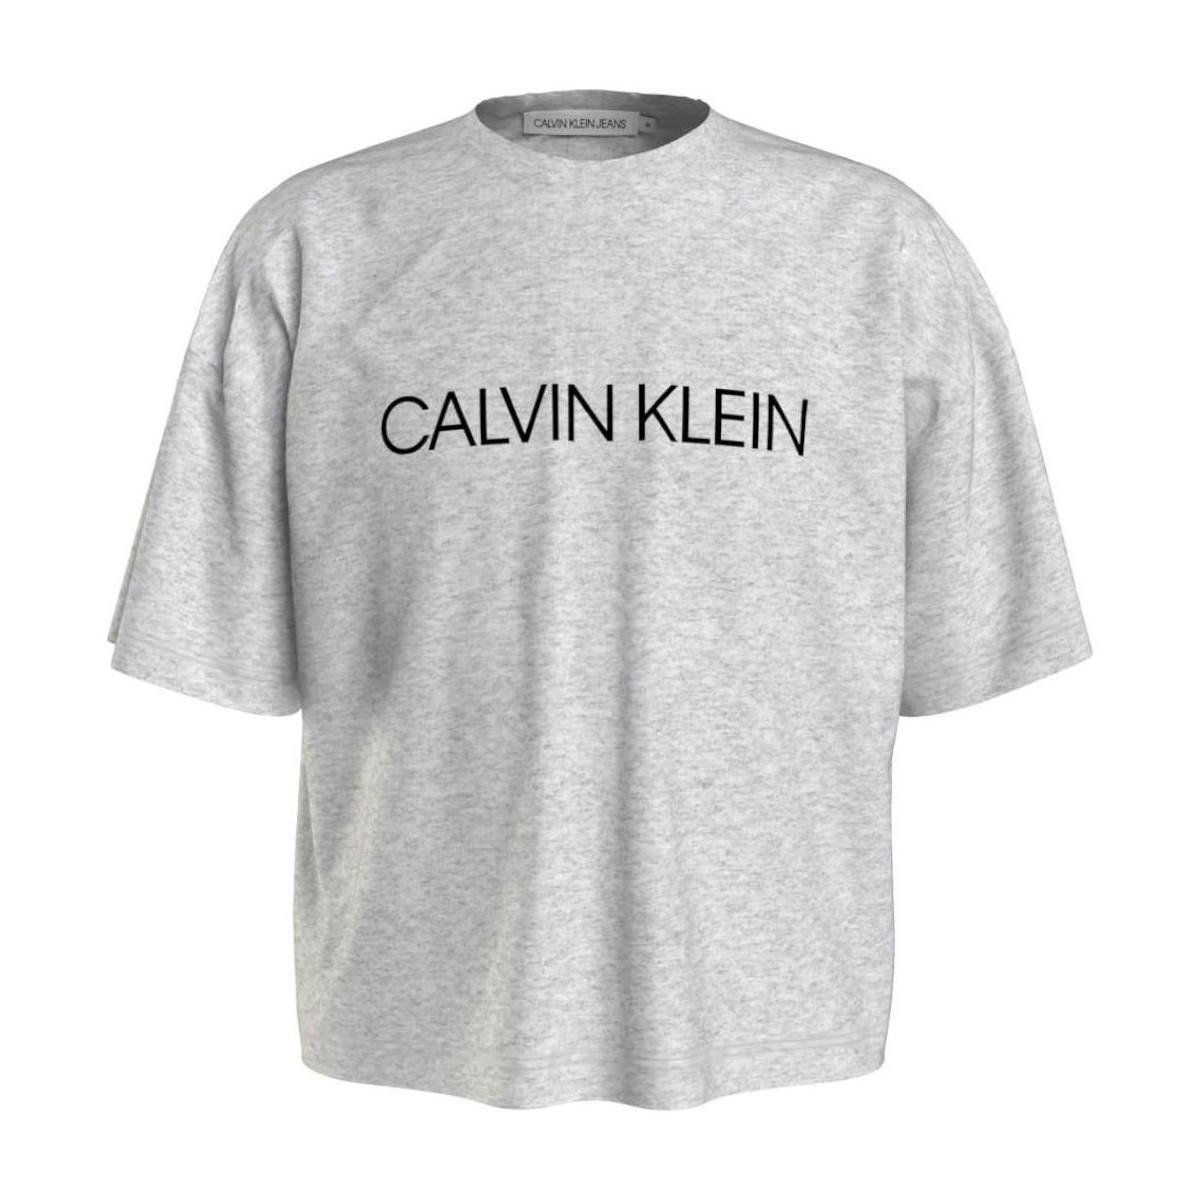 Oblečenie Dievča Tričká s krátkym rukávom Calvin Klein Jeans  Šedá